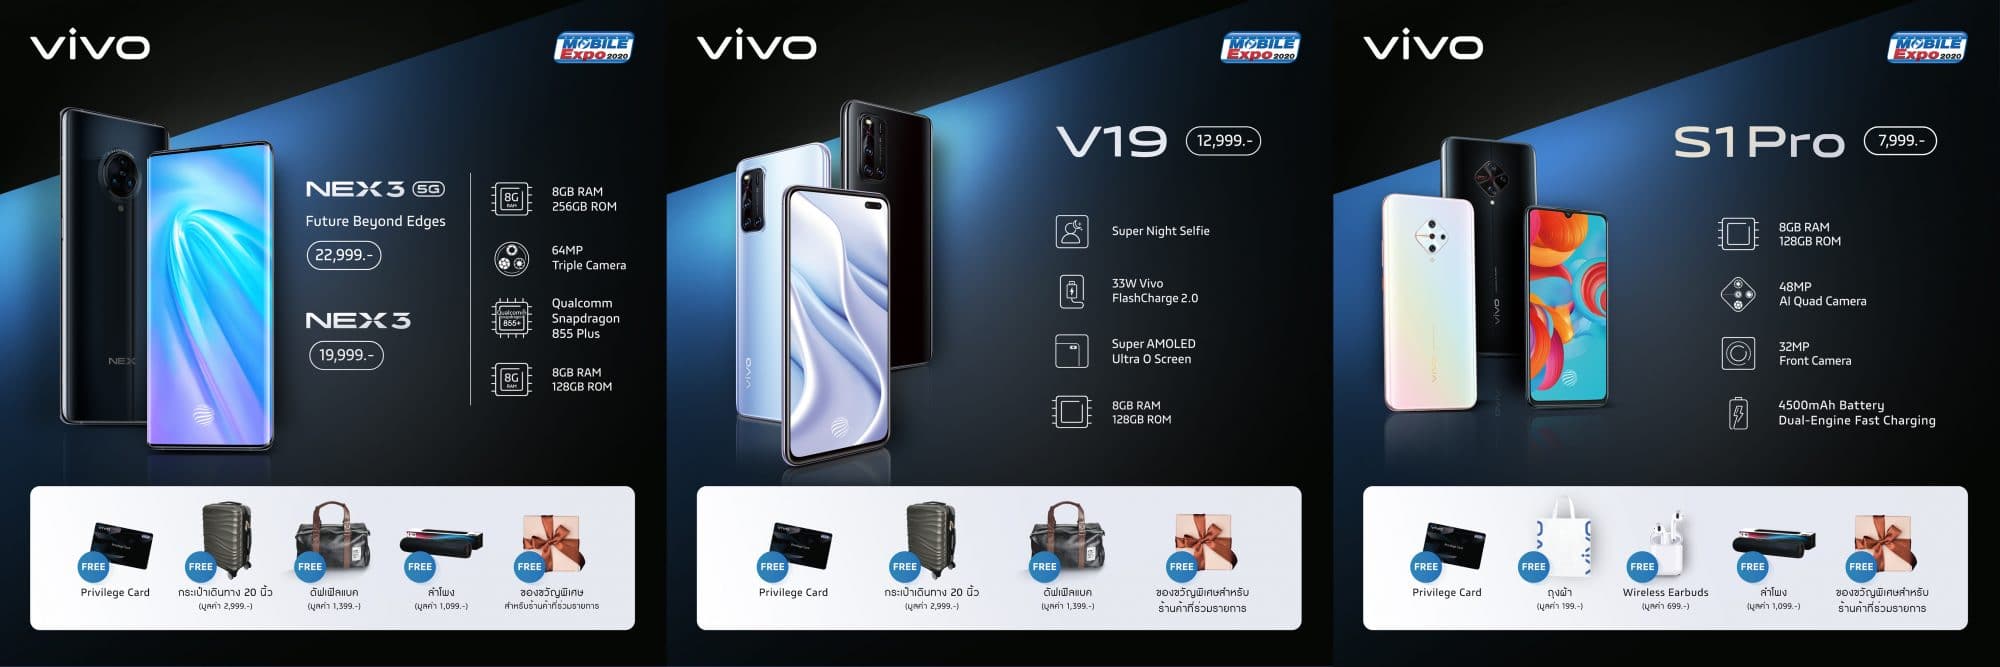 สัมผัสนวัตกรรมใหม่กับ Vivo ในงาน TME 2020 พร้อมโปรโมชั่นสุดคุ้ม 3